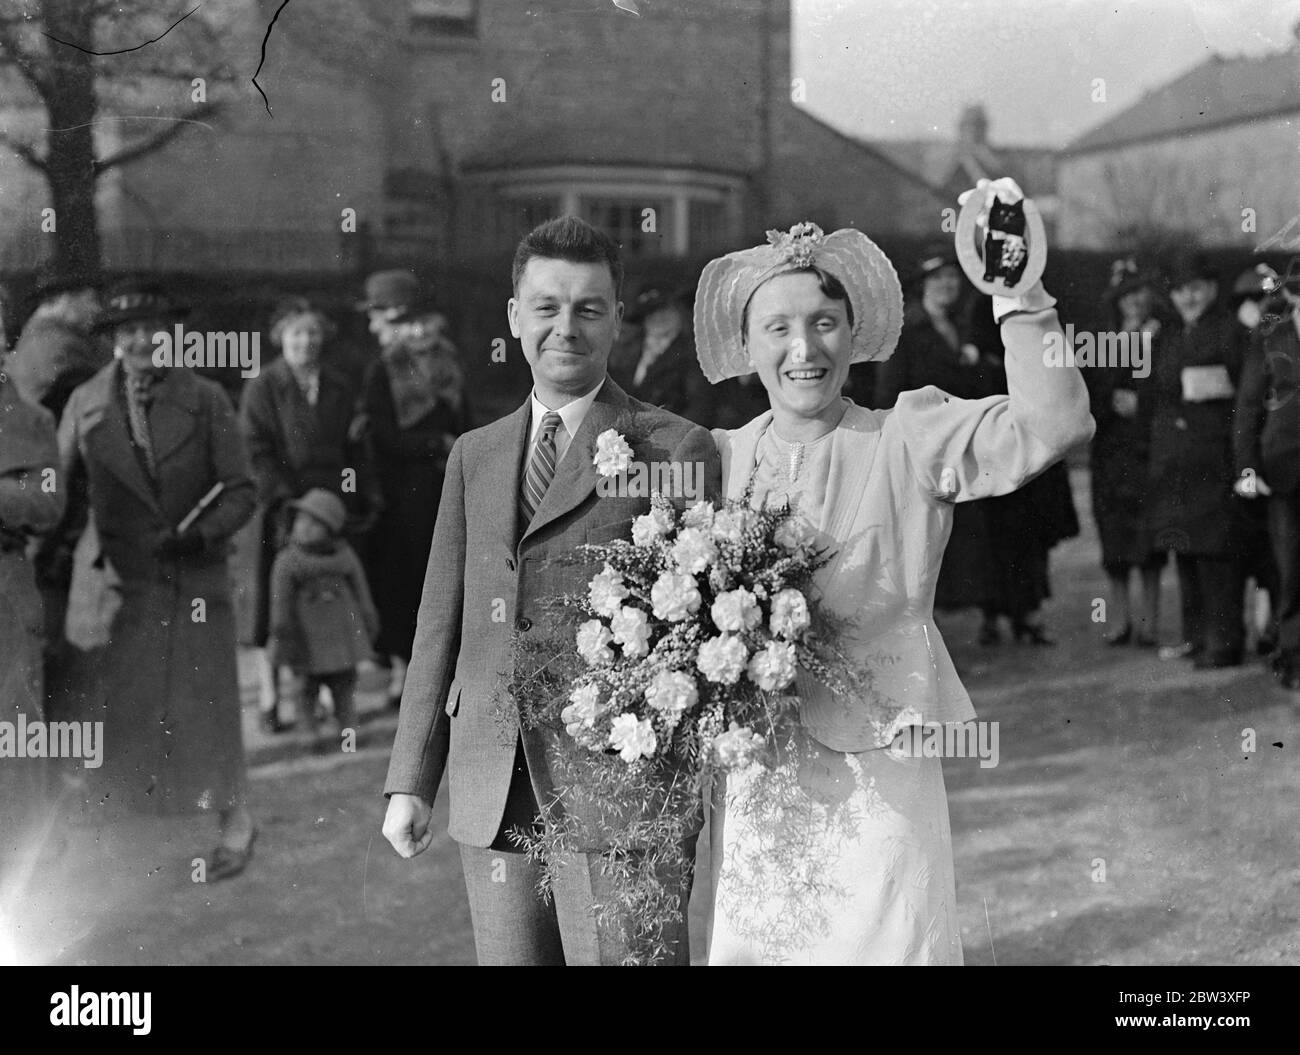 Mlle Katinka Larsen, la plus connue des femmes pilotes d'Angleterre et détentrice du championnat des comtés du Sud, a été mariée à M. E Tinsley, membre du club de plongée Highgate, à Christ Church, à Finchley. La photo montre la mariée et le marié quittant l'église. 27 mars 1937 Banque D'Images